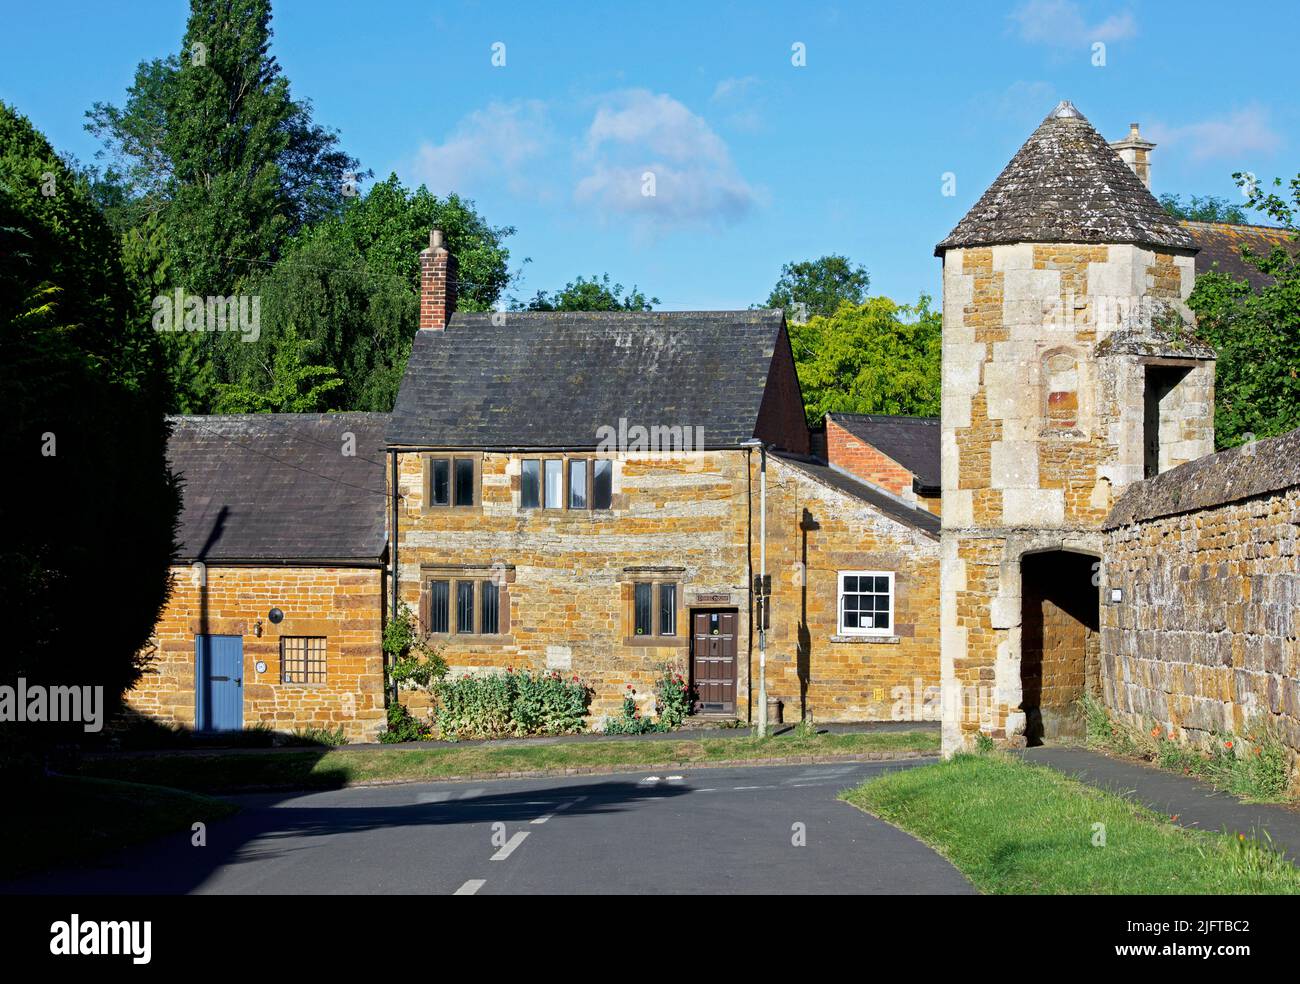 Le village de Lyddington, Rutland, Angleterre Royaume-Uni Banque D'Images